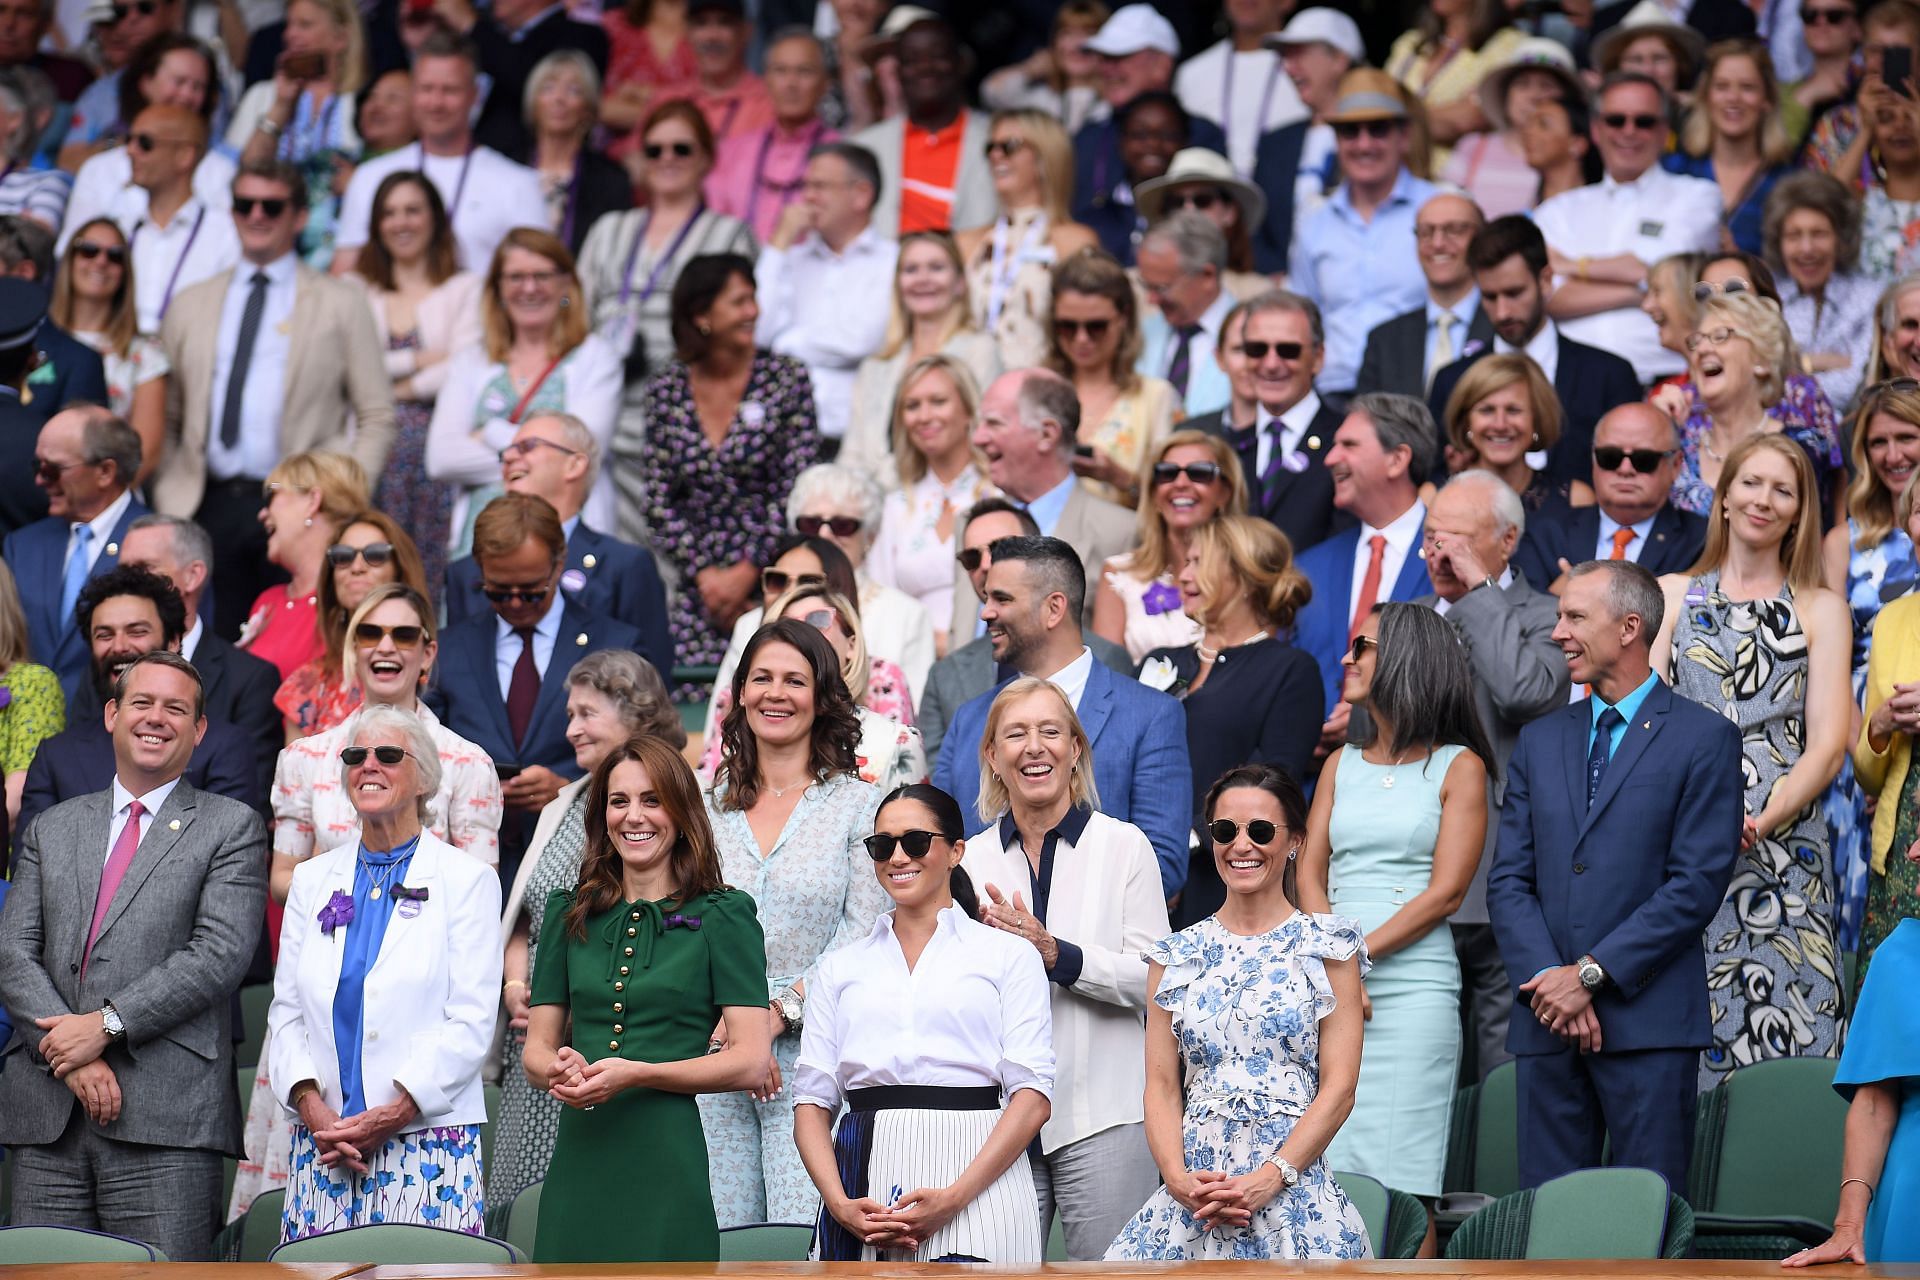 Martina Navratilova among the spectators at the 2019 Wimbledon.